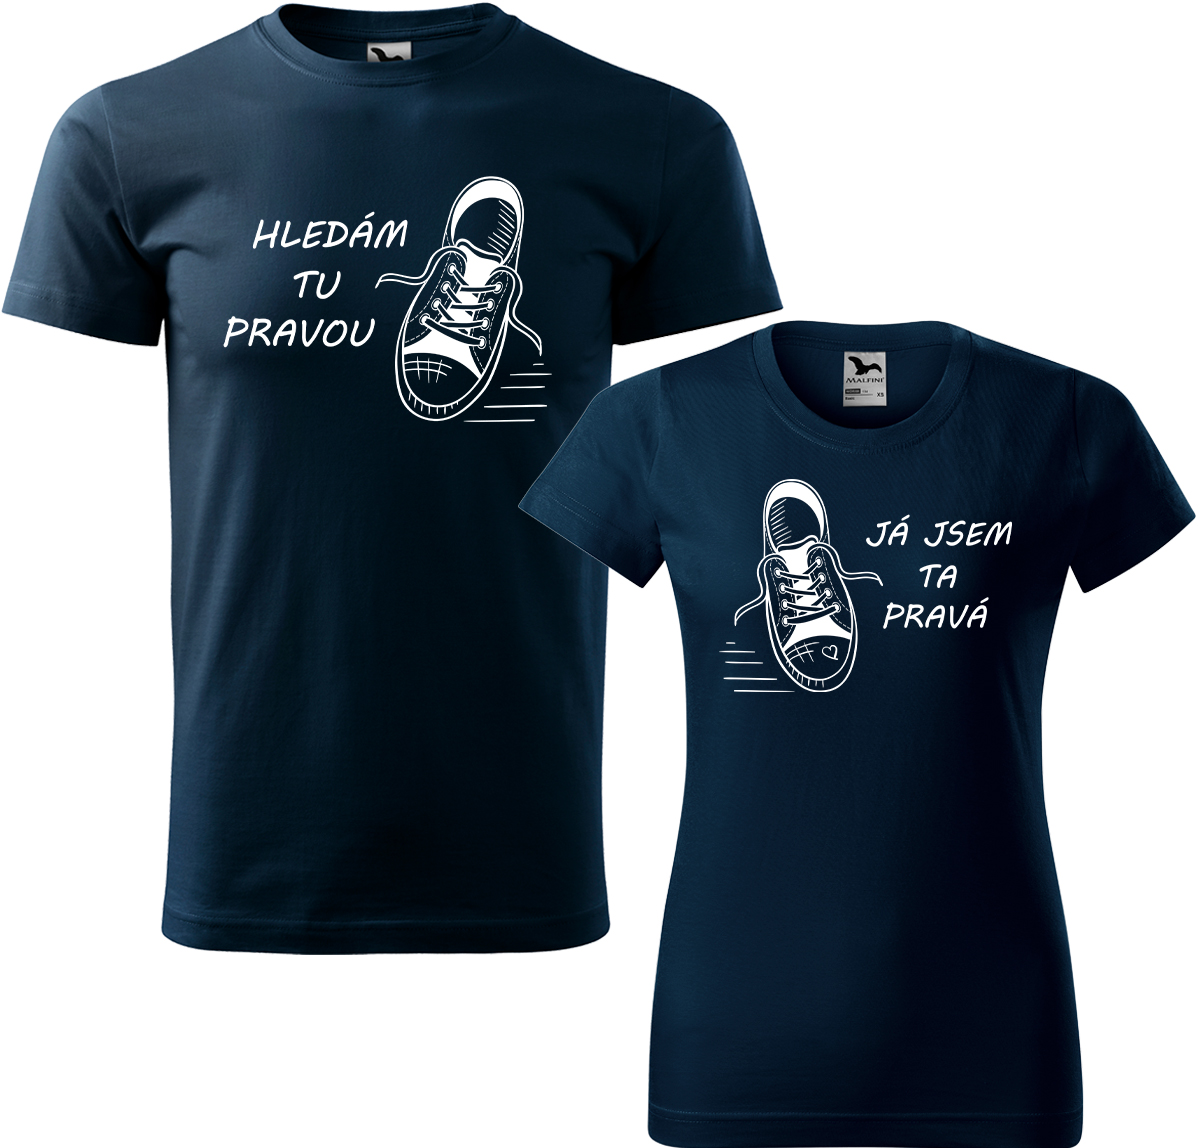 Trička pro páry - Kecky Barva: Námořní modrá (02), Velikost dámské tričko: S, Velikost pánské tričko: L